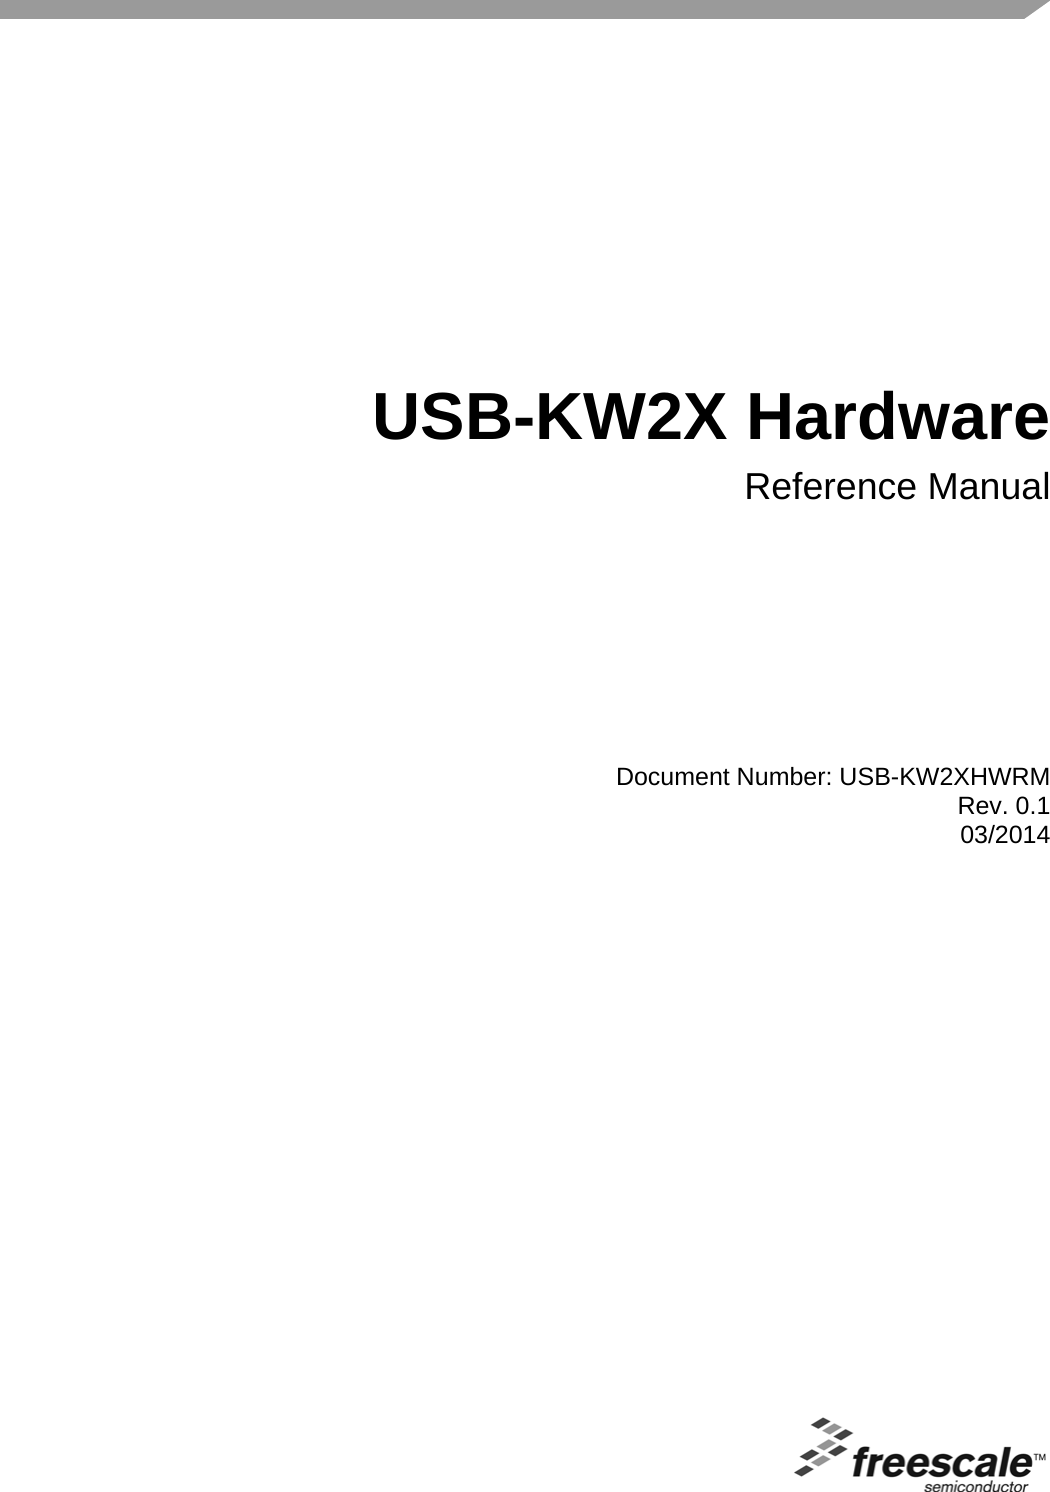 Document Number: USB-KW2XHWRMRev. 0.103/2014 USB-KW2X HardwareReference Manual